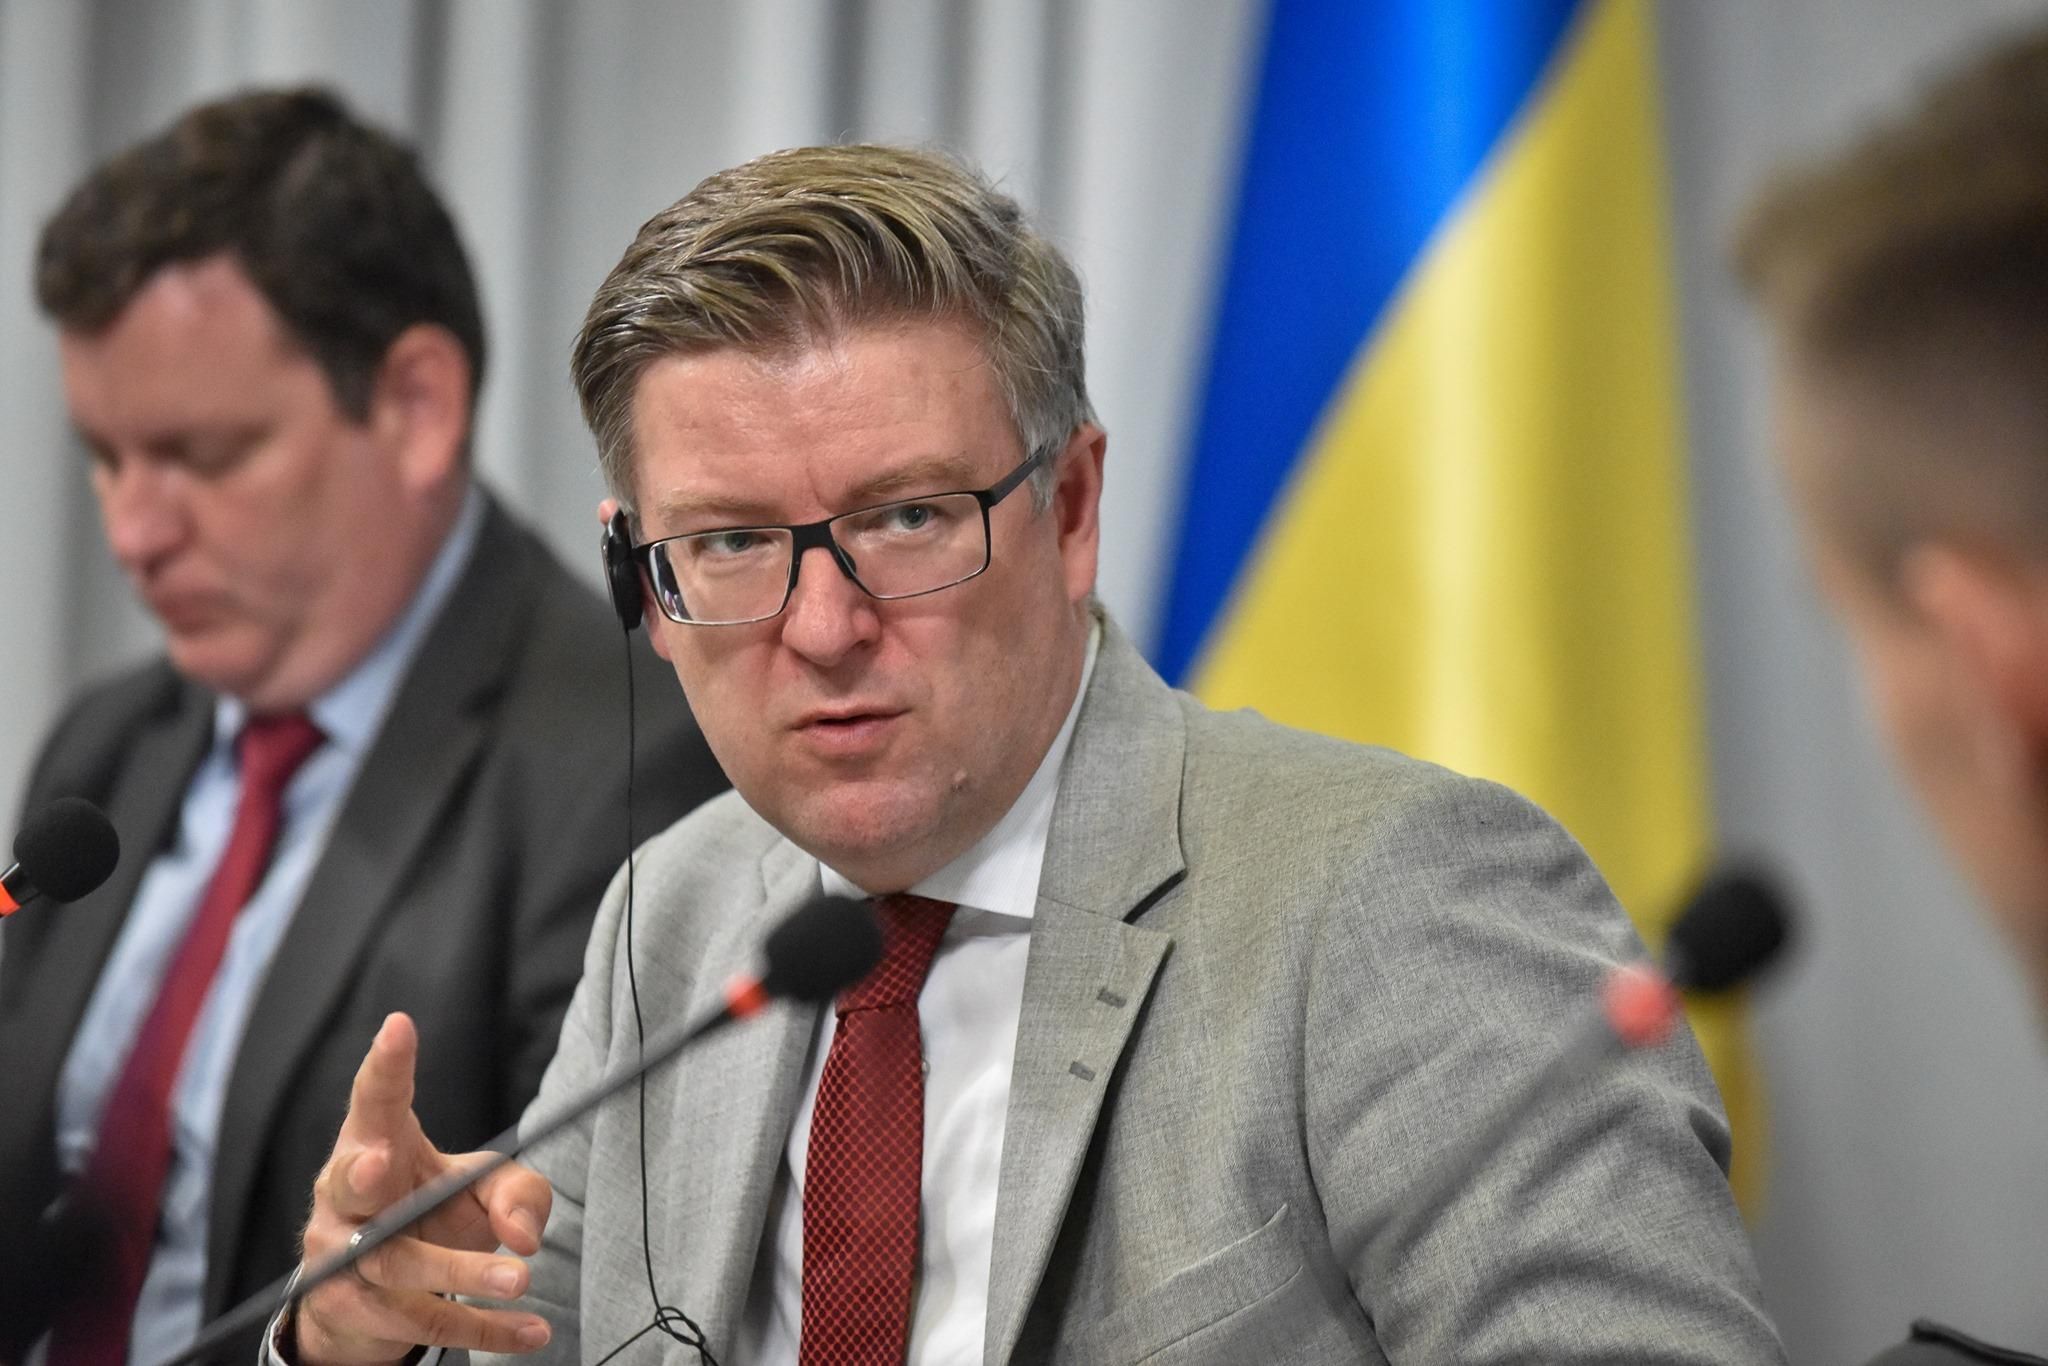 Не только Javelin: Эстония обдумывает дополнительную военную помощь для Украины